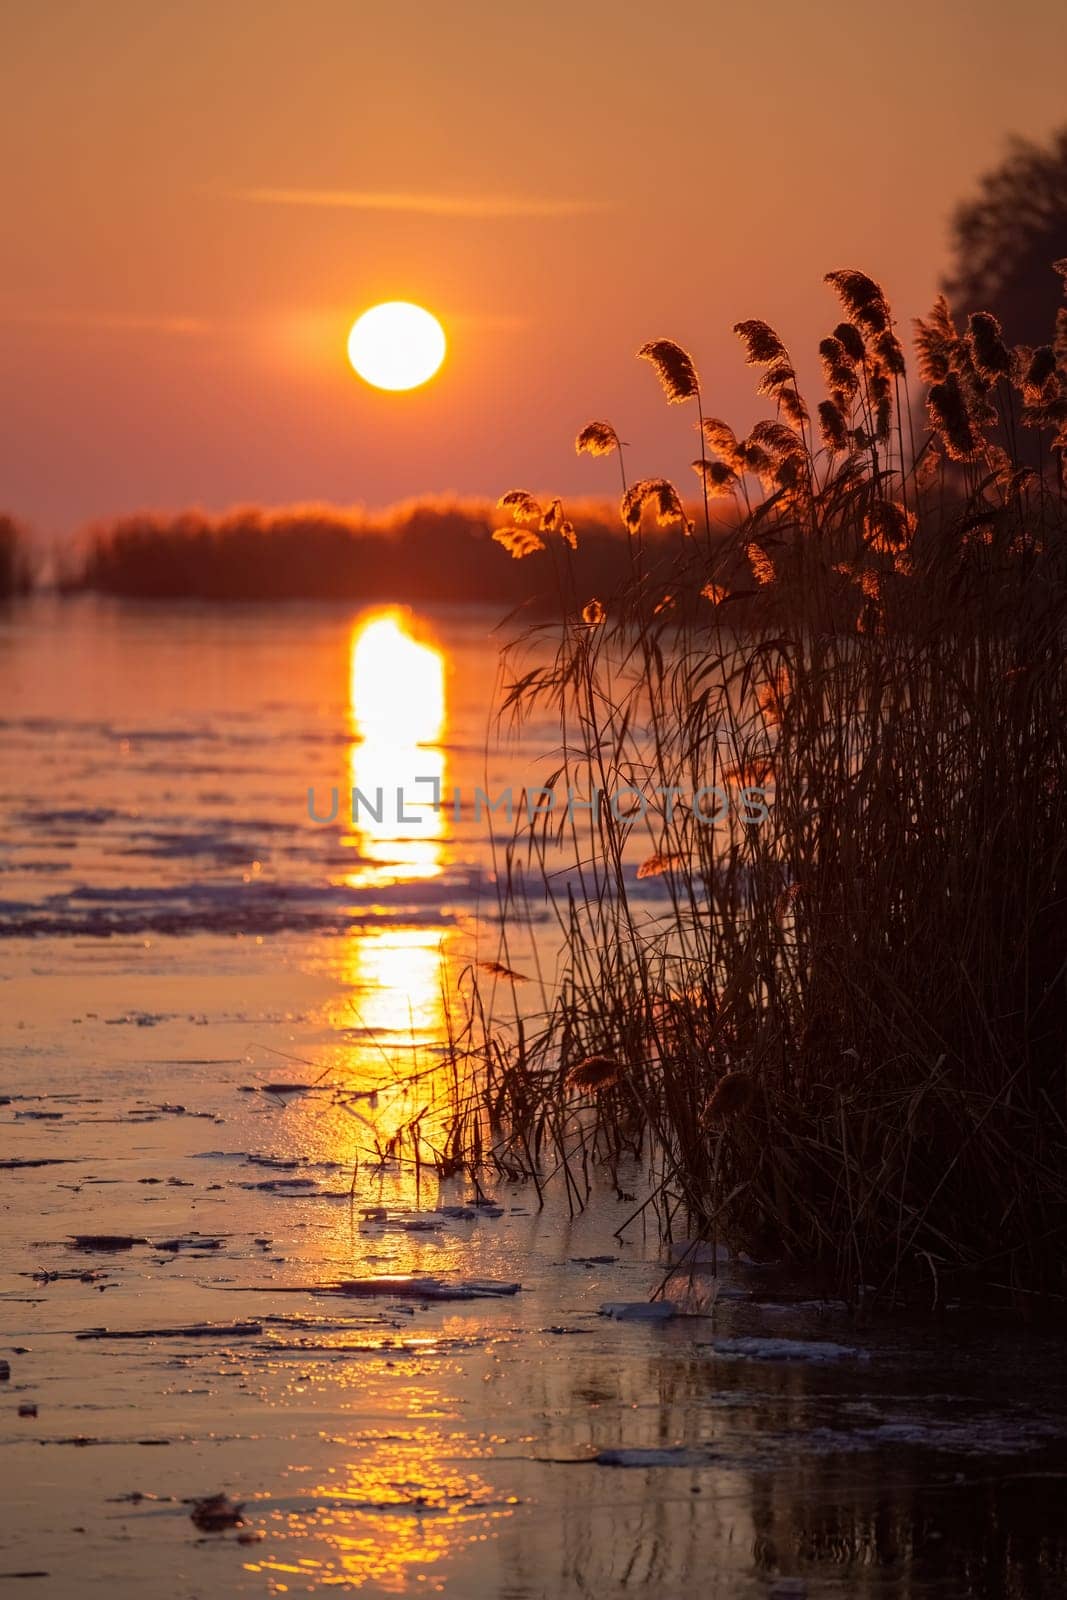 Winter sunset over the lake Balaton of Hungary by Digoarpi